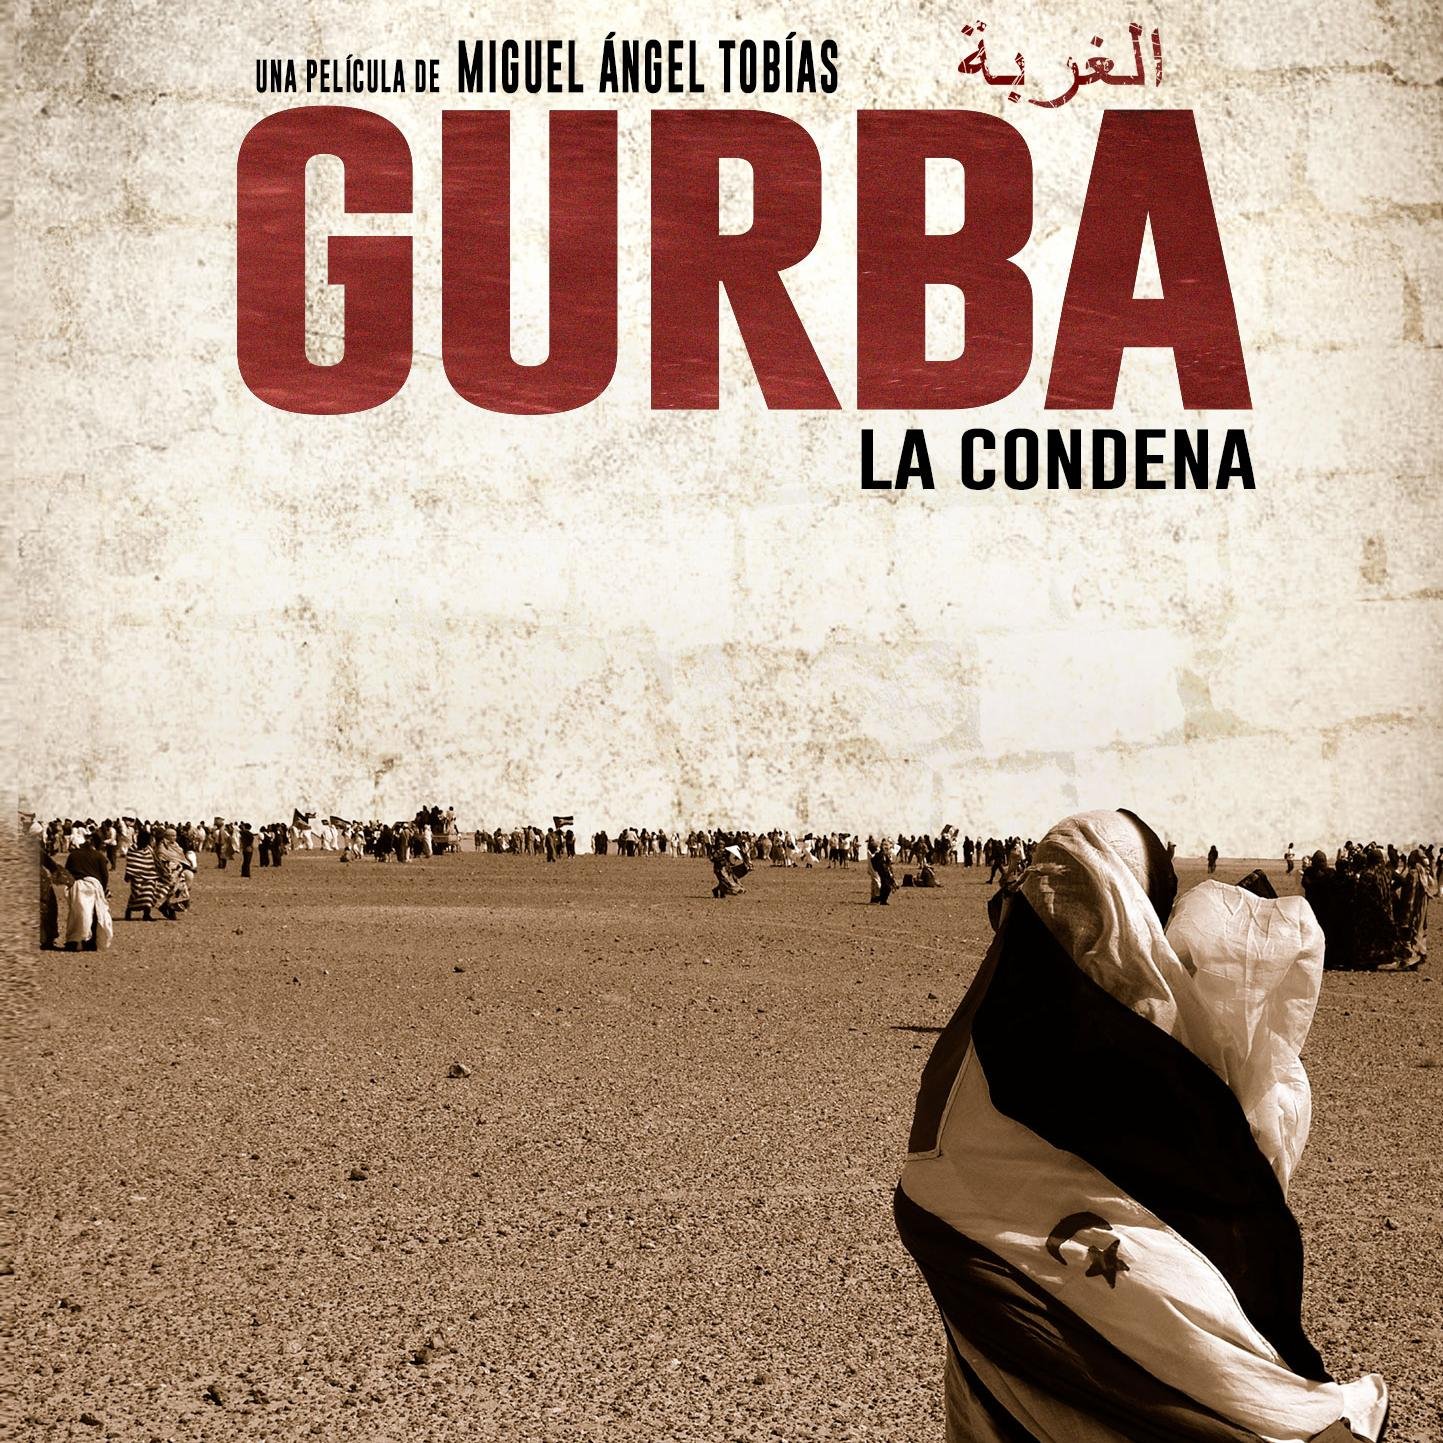 Producida por @accamedia y dirigida por @ma_tobias | Película documental que da voz a los refugiados saharauis condenados a vivir lejos de su tierra